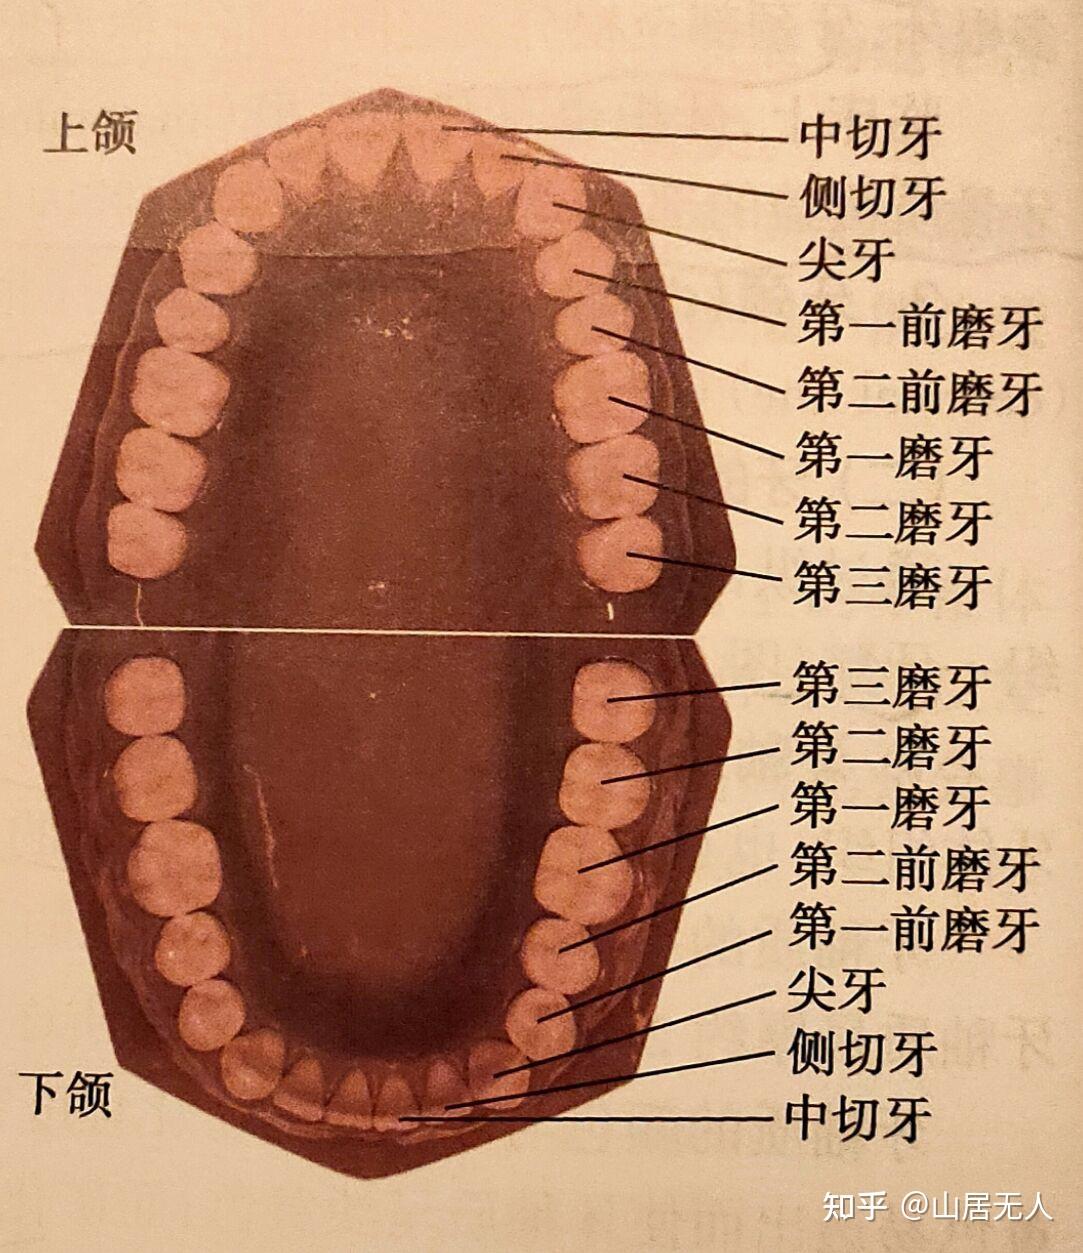 位于口腔前部,上下左右共8颗,分别是:上颌中切牙,上颌侧切牙,下颌中